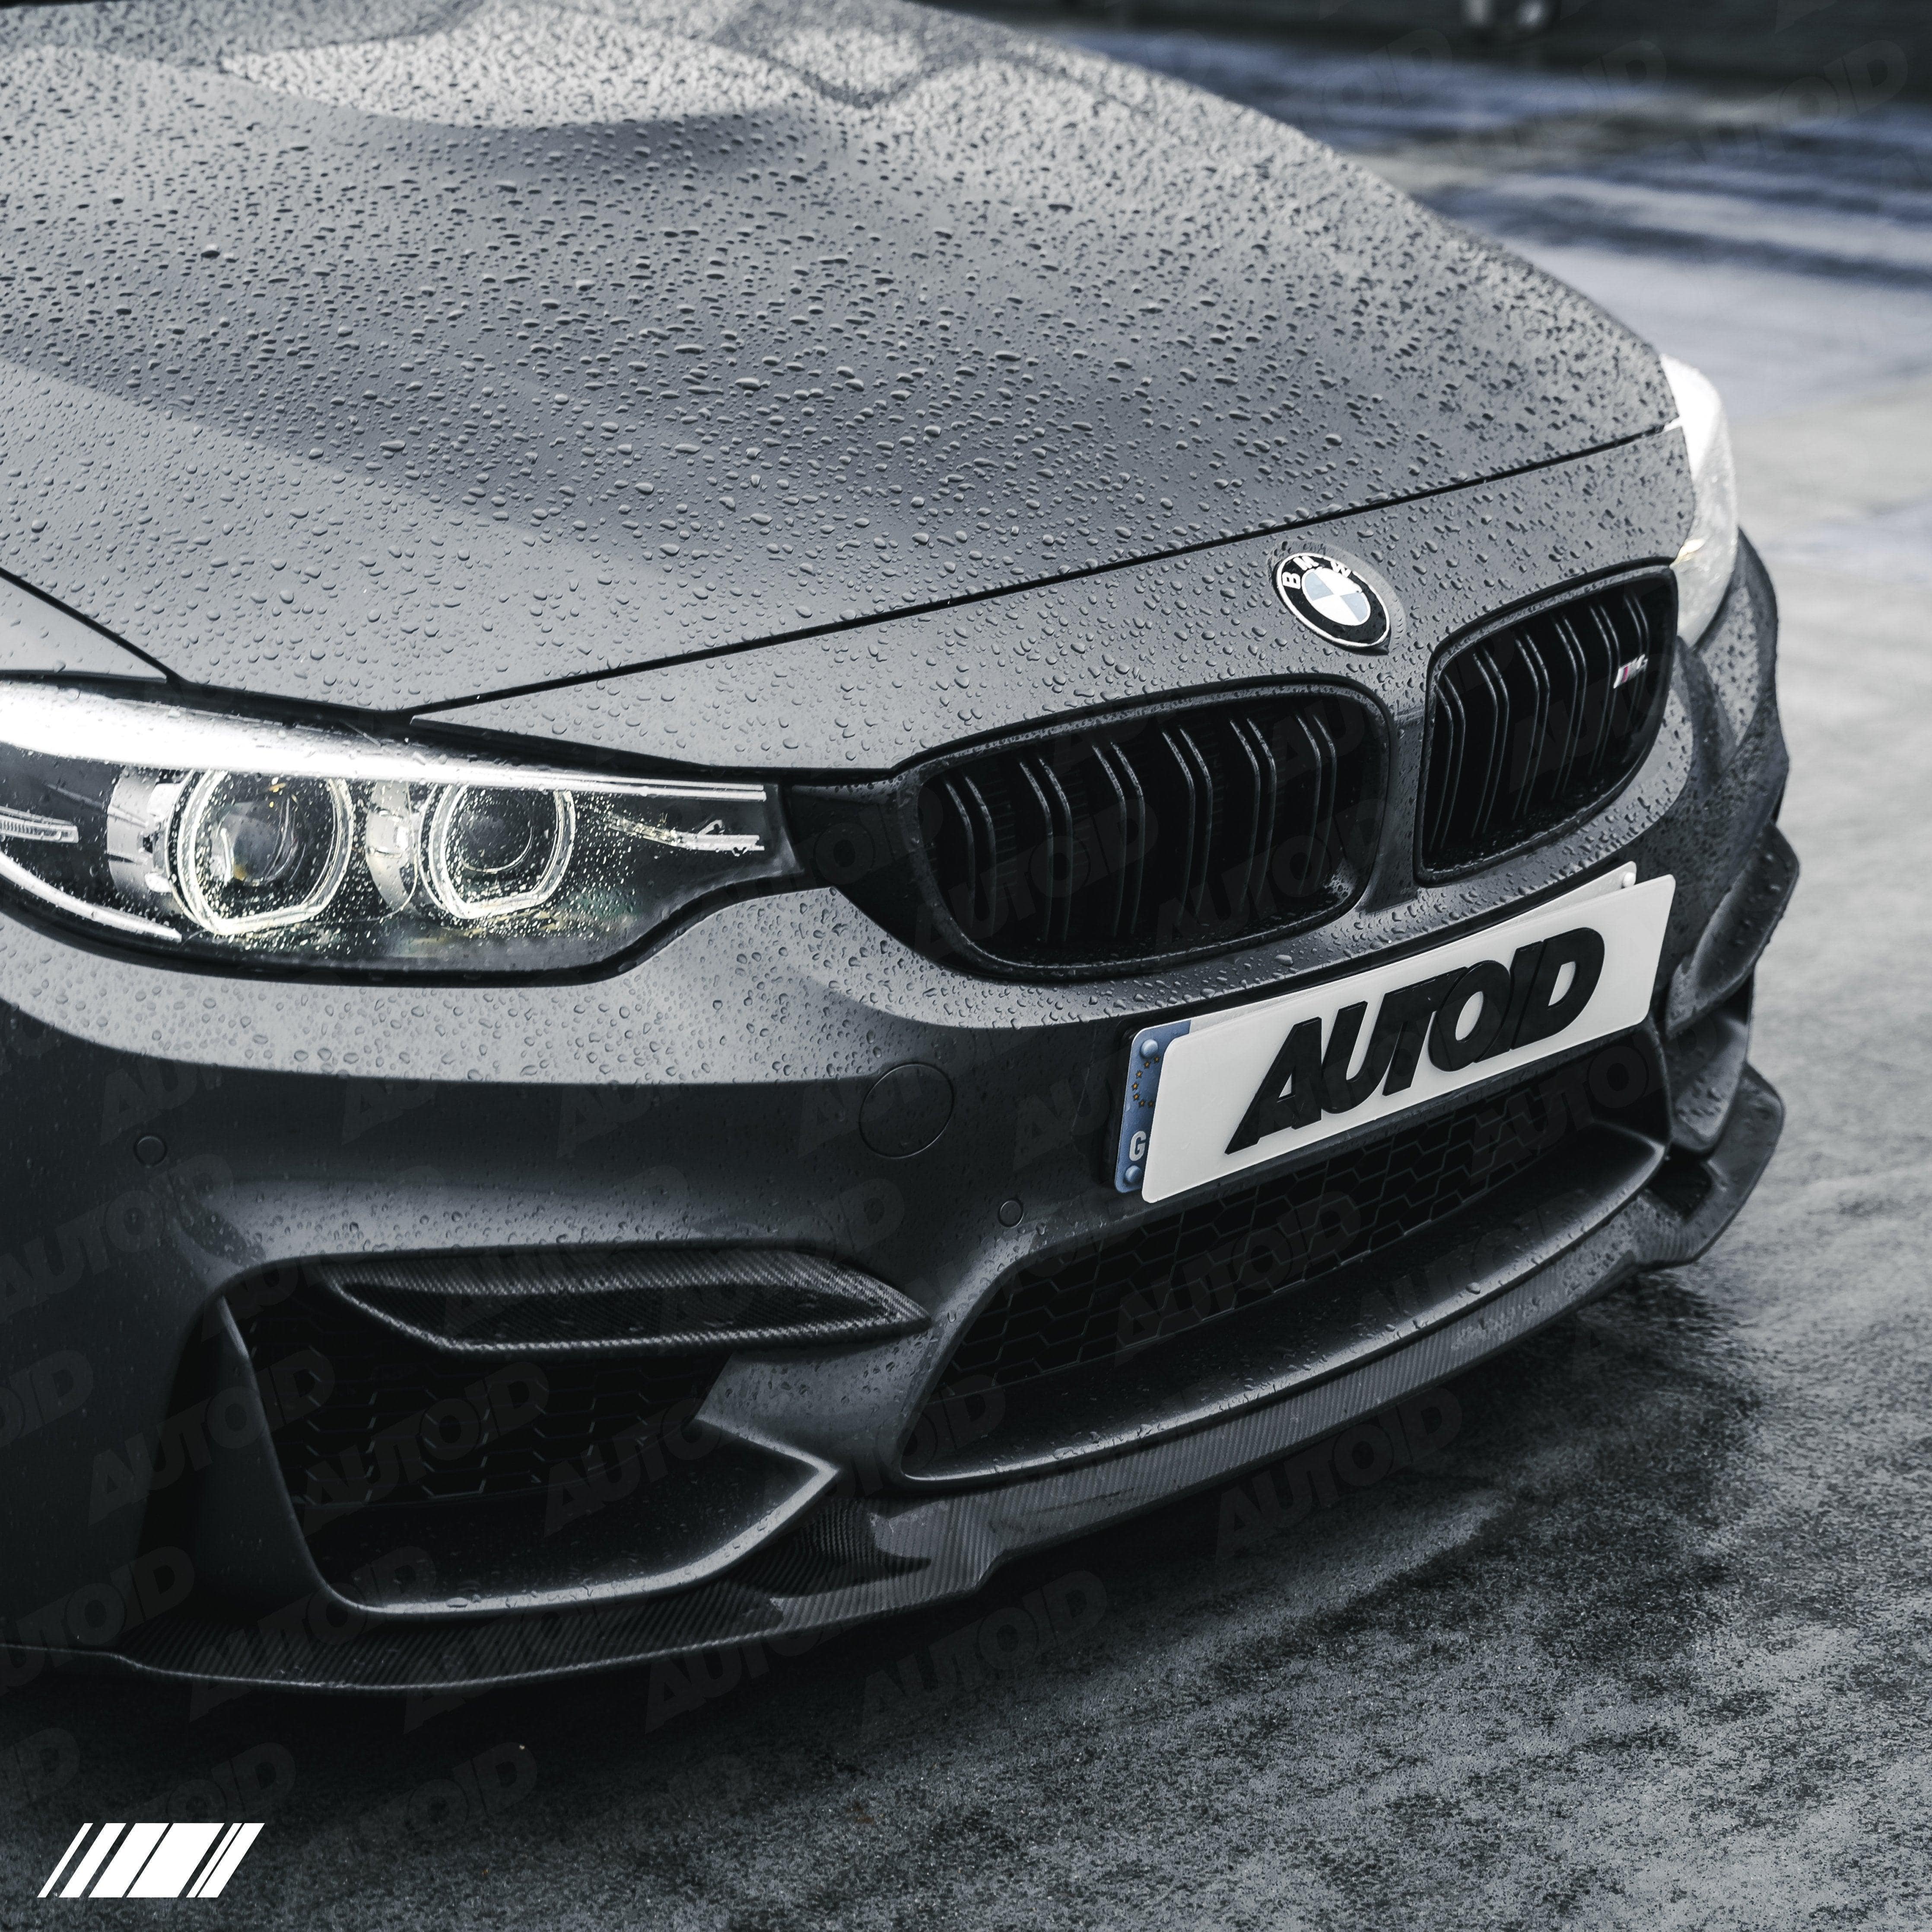 Carbon Fibre CS Front Splitter for BMW M3 & M4 (2014-2020, F80 F82), Front Lips & Splitters, Essentials - AUTOID | Premium Automotive Accessories